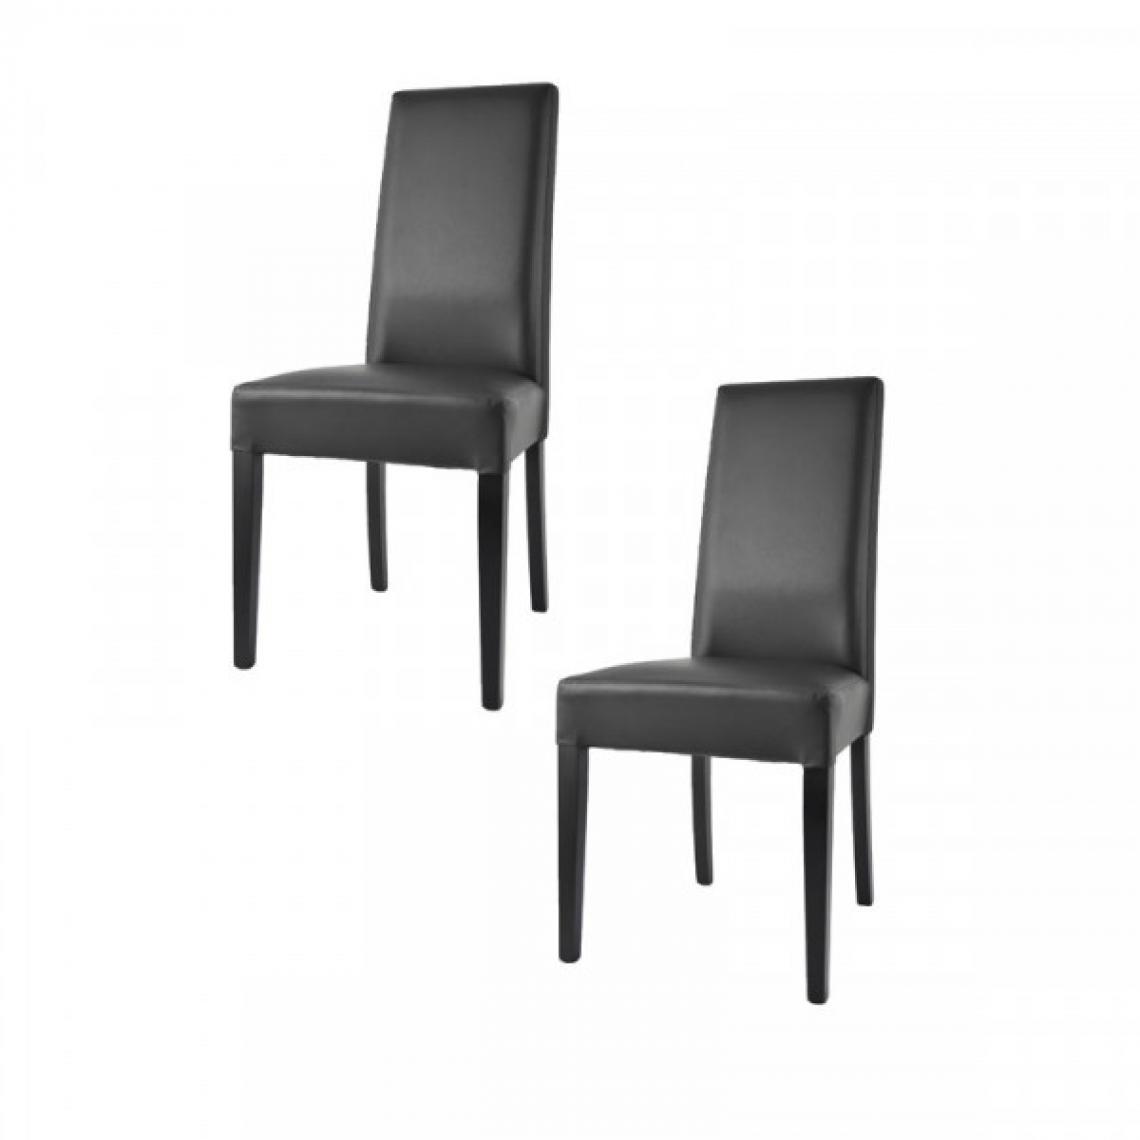 Dansmamaison - Duo de chaises en similicuir Noir - VENISE - L 54 x l 46 x H 99 cm - Chaises